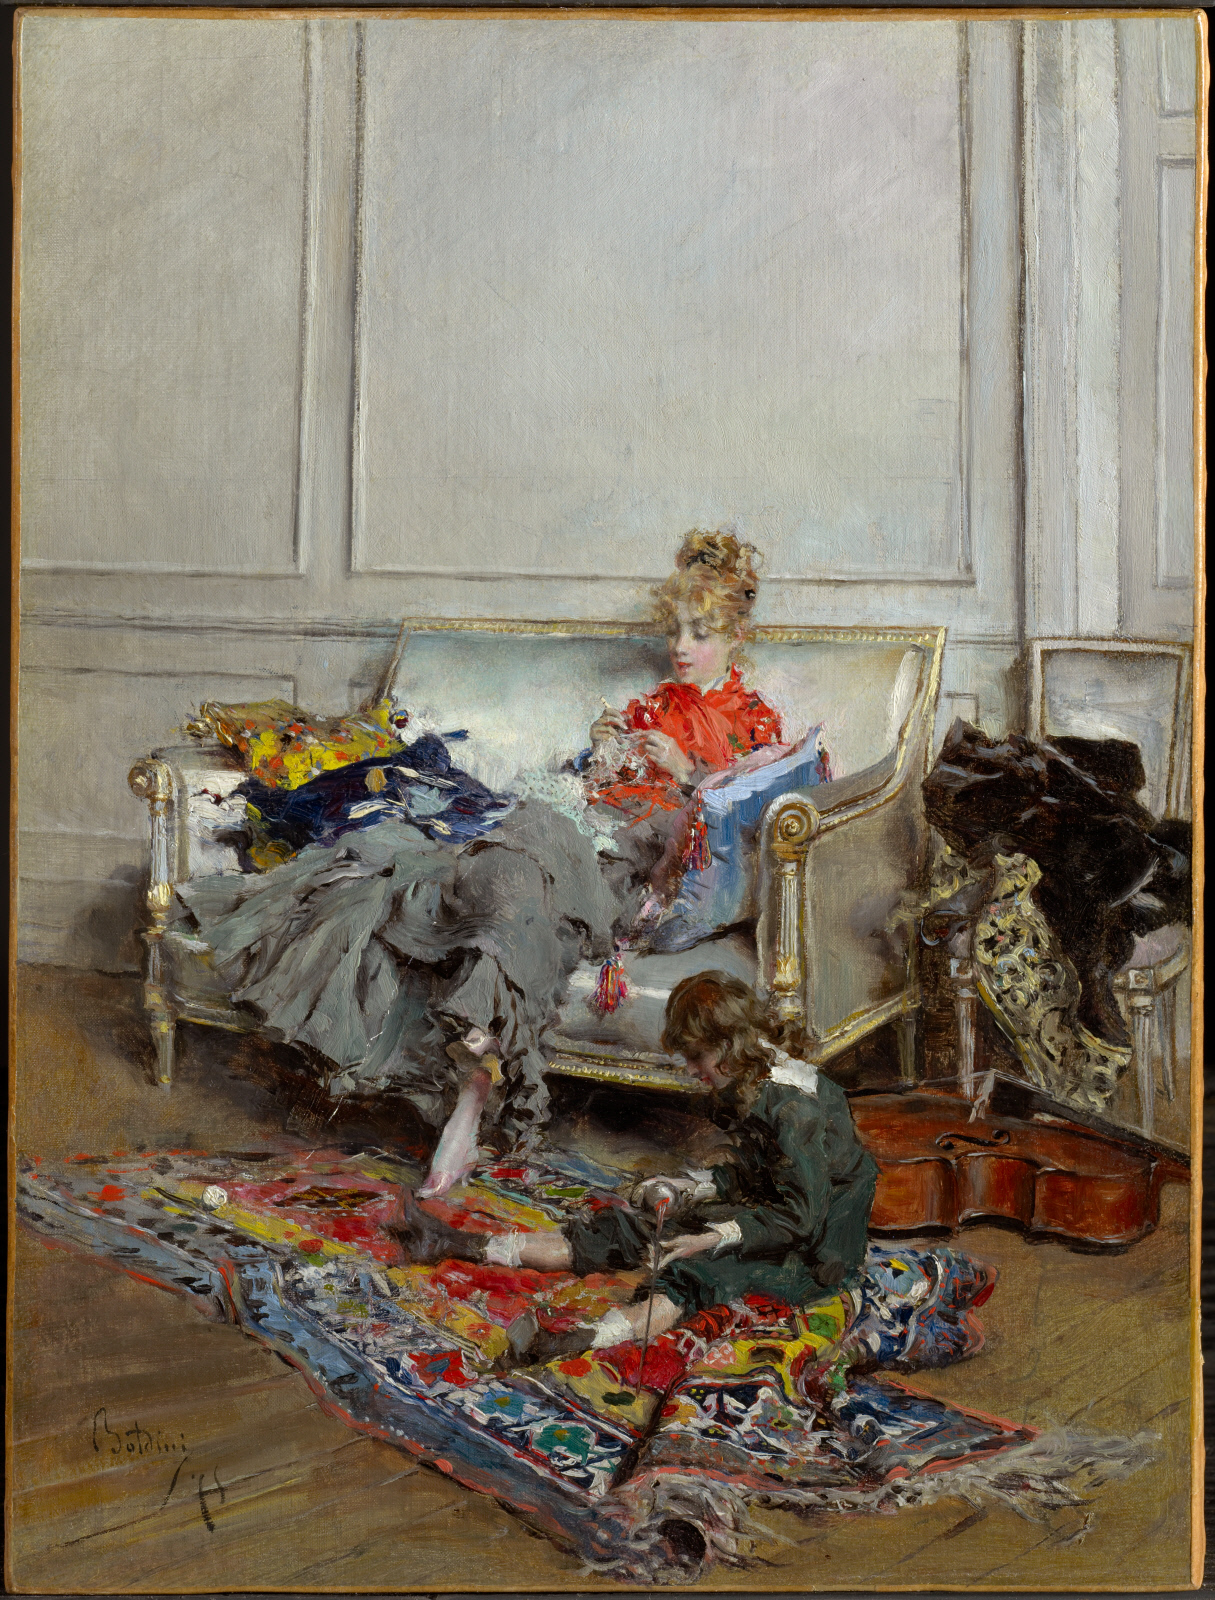 Giovane donna che lavora all’uncinetto by Giovanni Boldini - 1875 - 36.2 x 27.4 cm The Clark